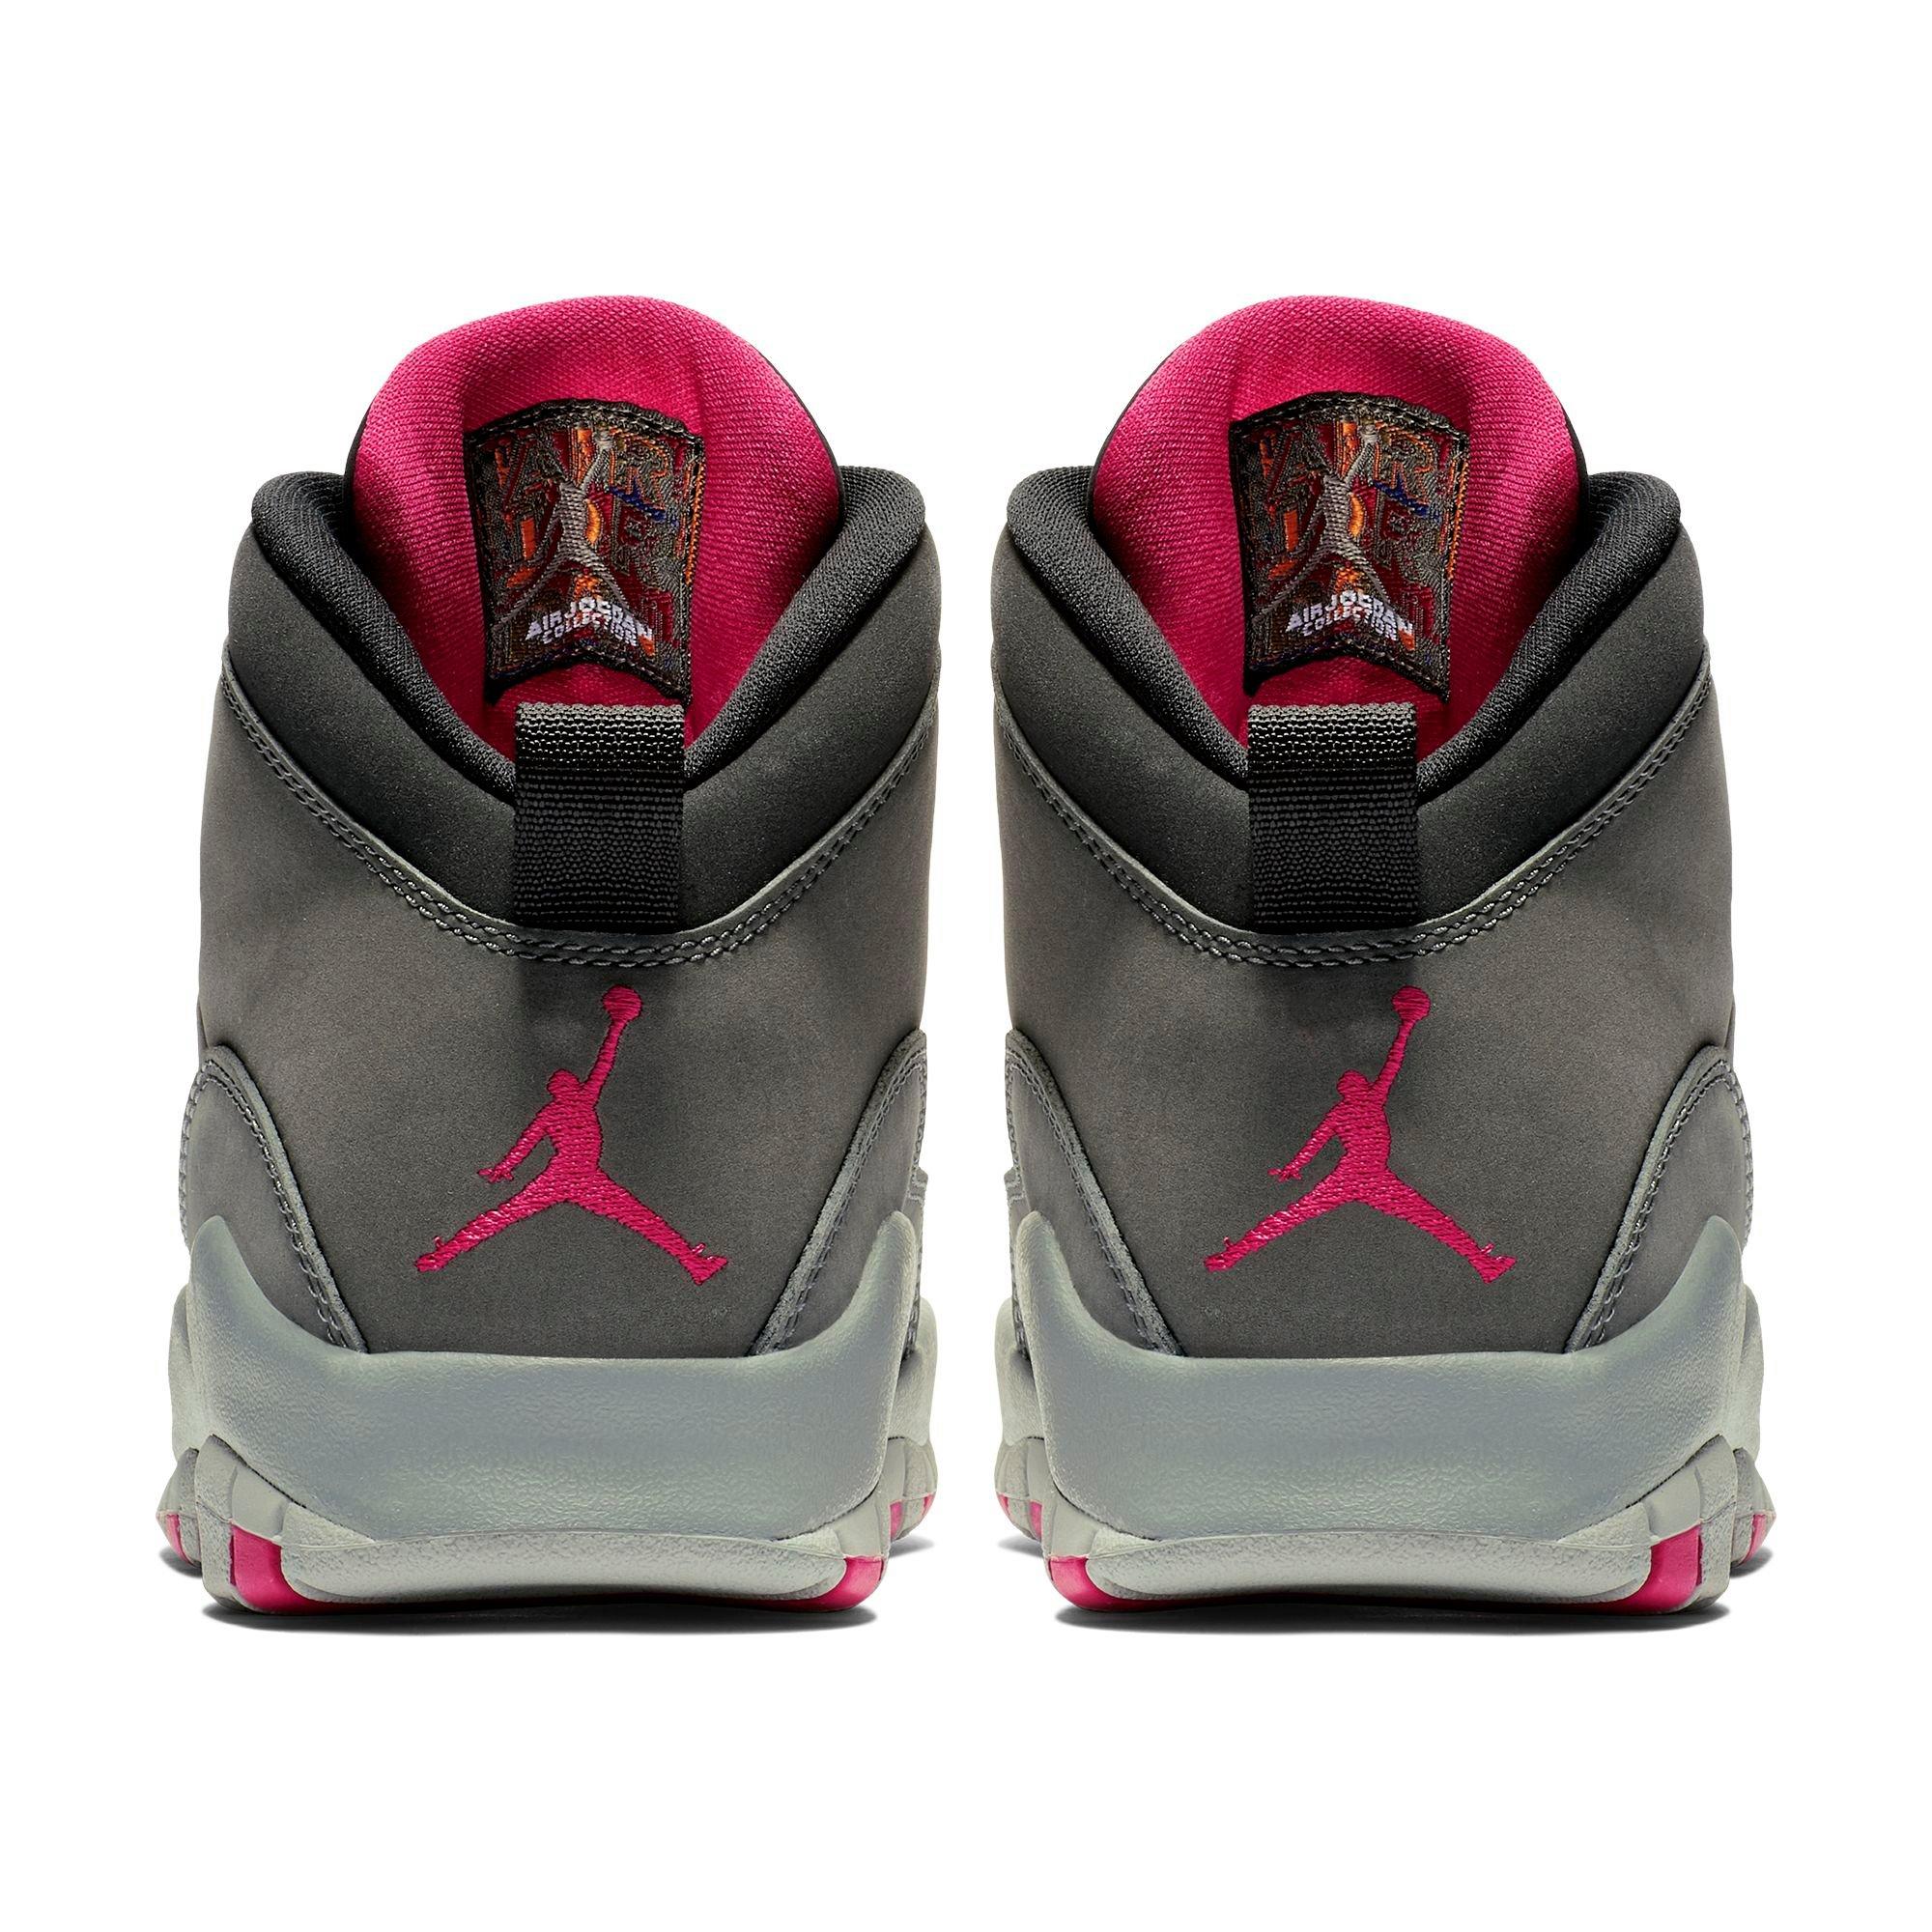 jordan 10 gray and pink